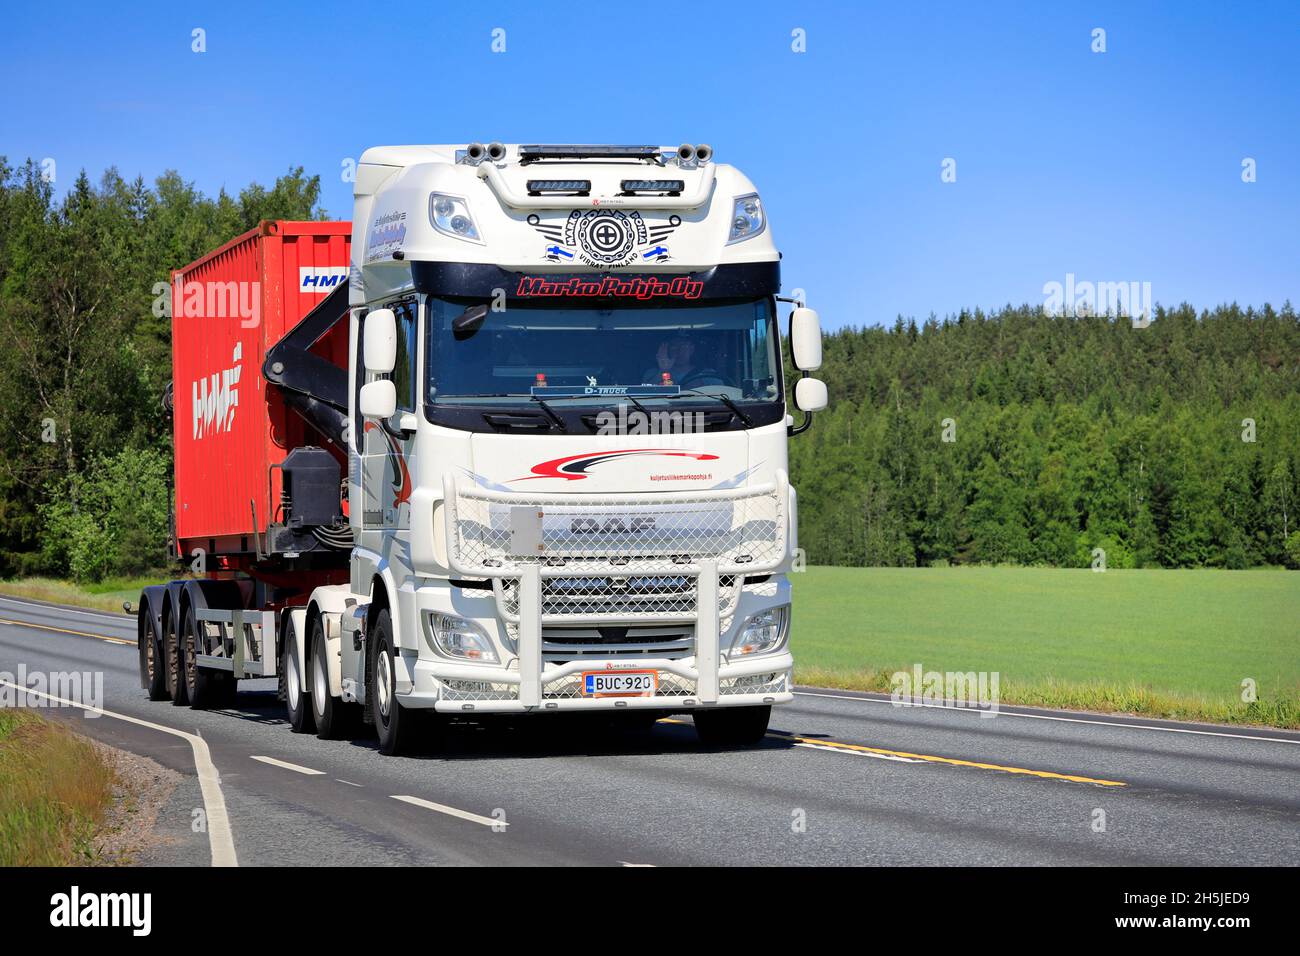 Le camion DAF XF blanc sur mesure Marko Pohja Oy transporte un conteneur rouge sur l'autoroute 2 par beau temps d'été.Jokioinen, Finlande.15 juin 2020. Banque D'Images